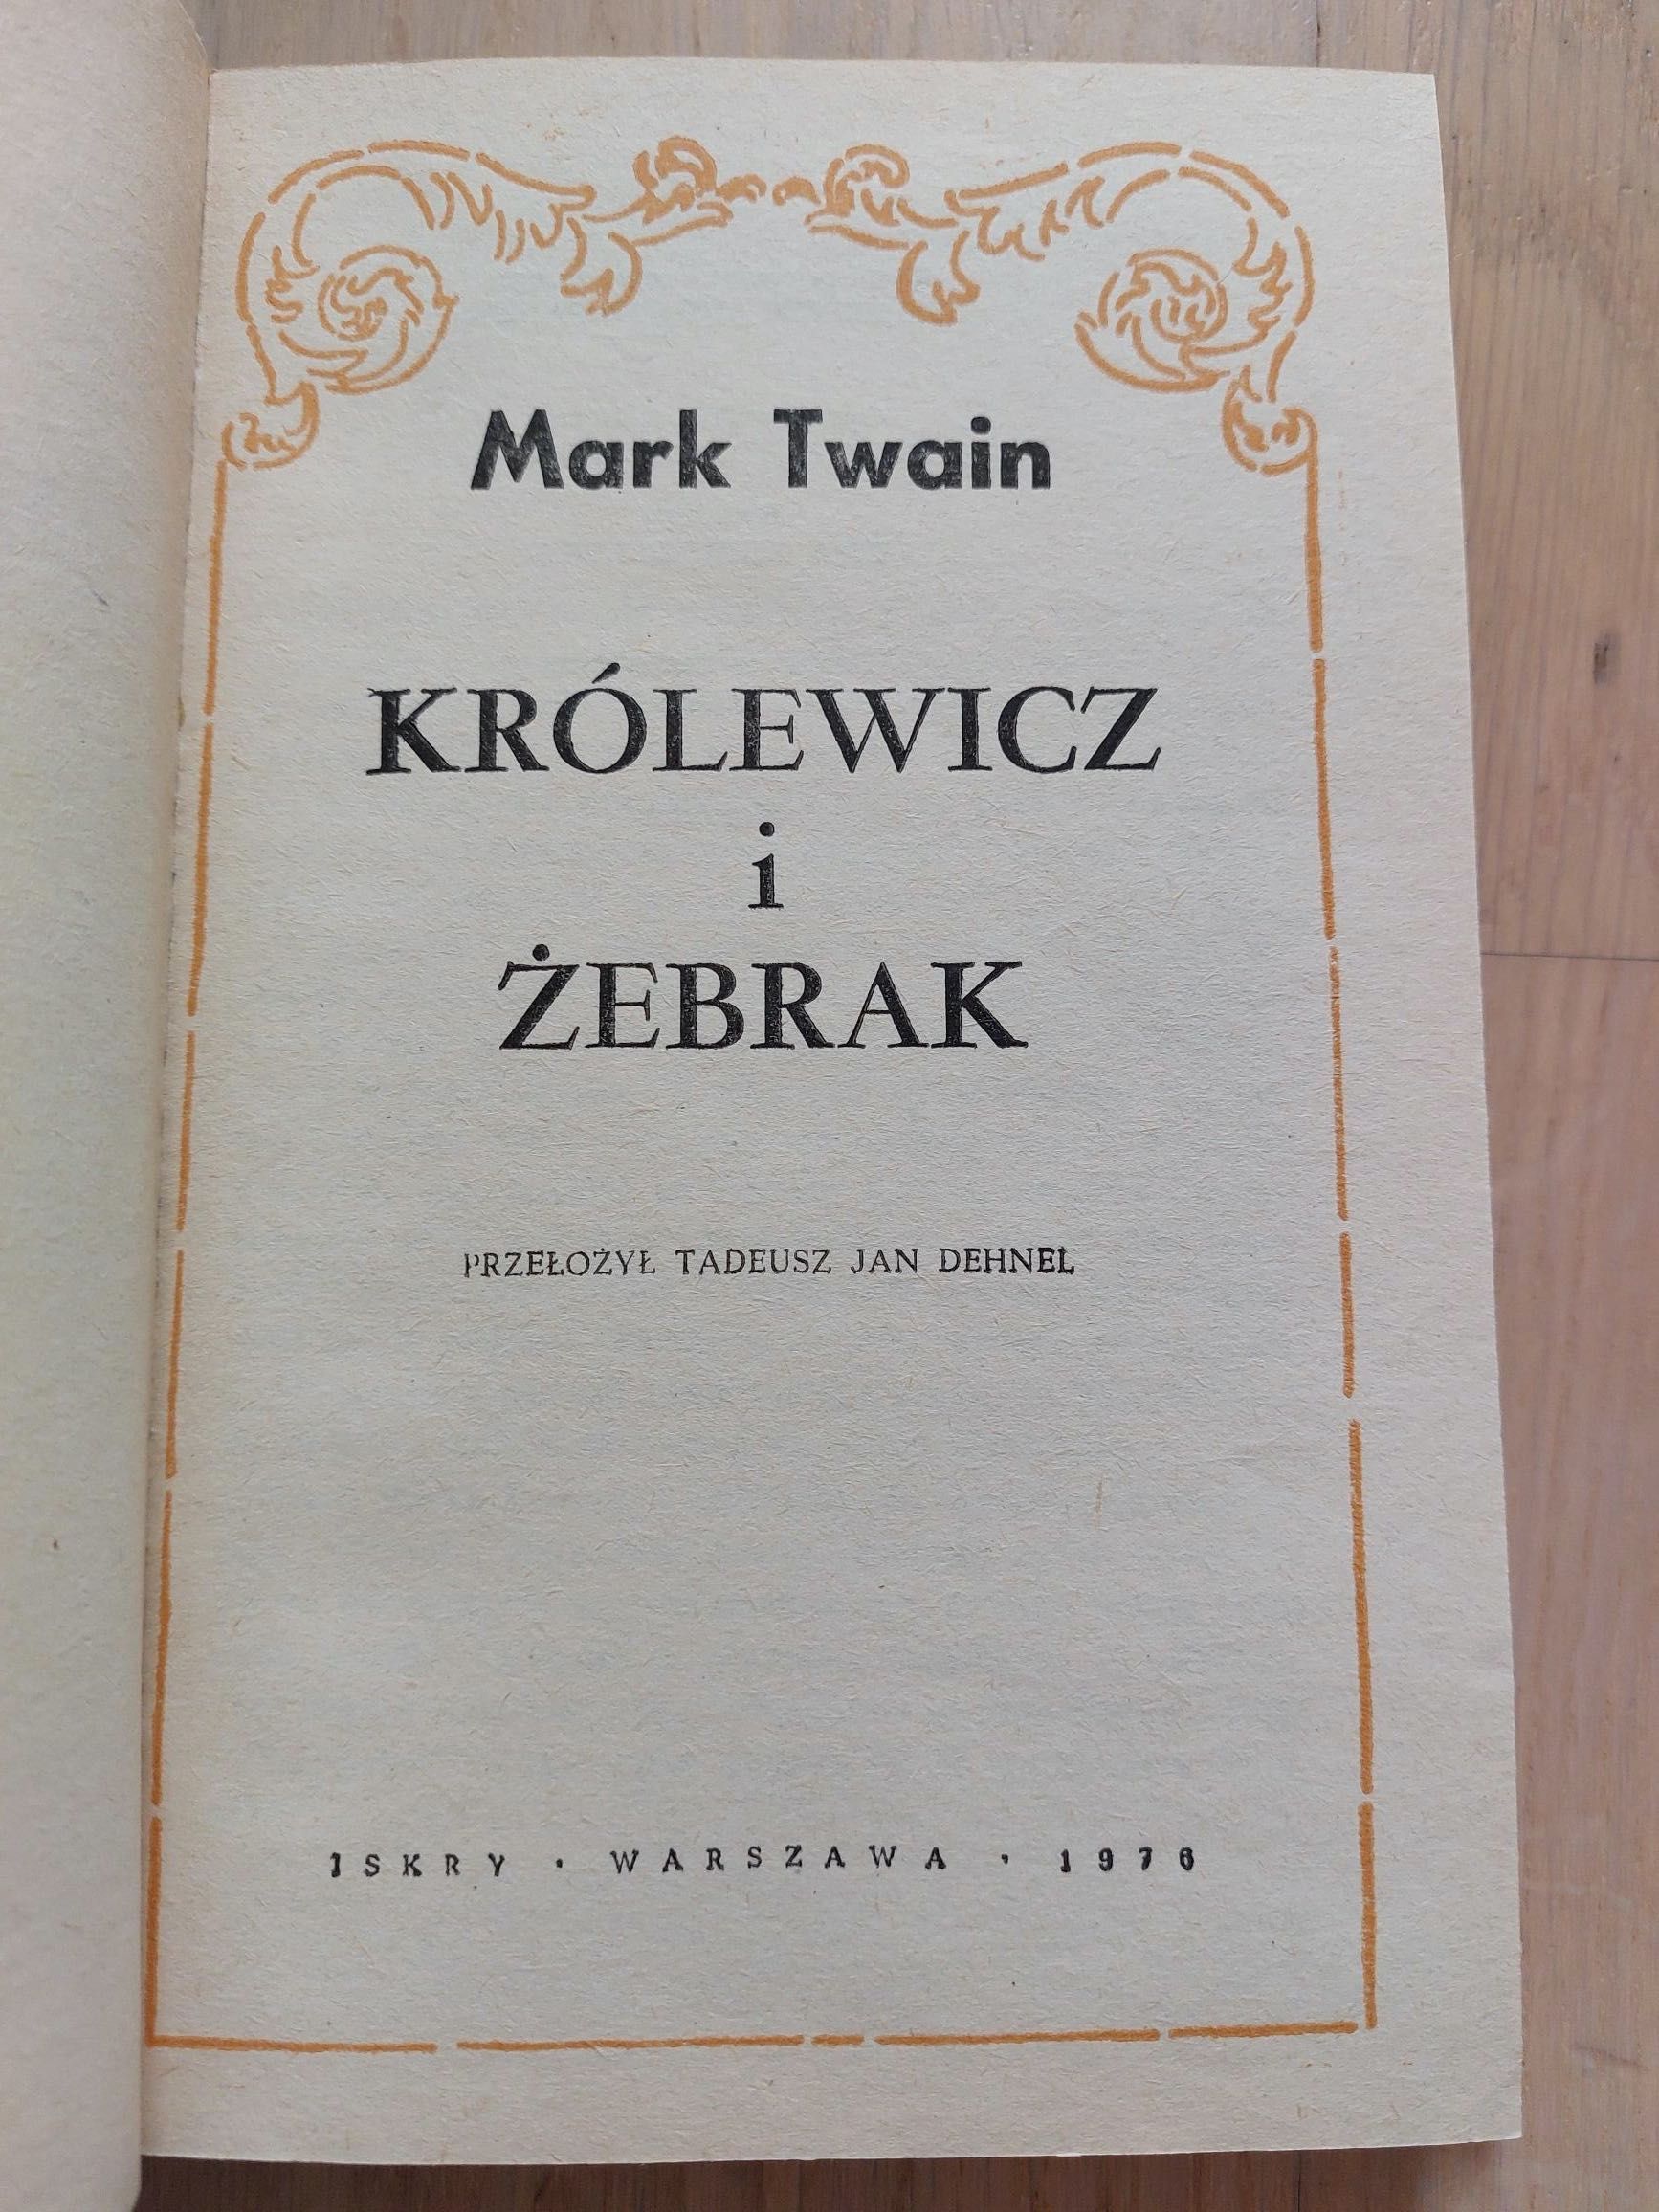 Mark Twain, Królewicz i żebrak